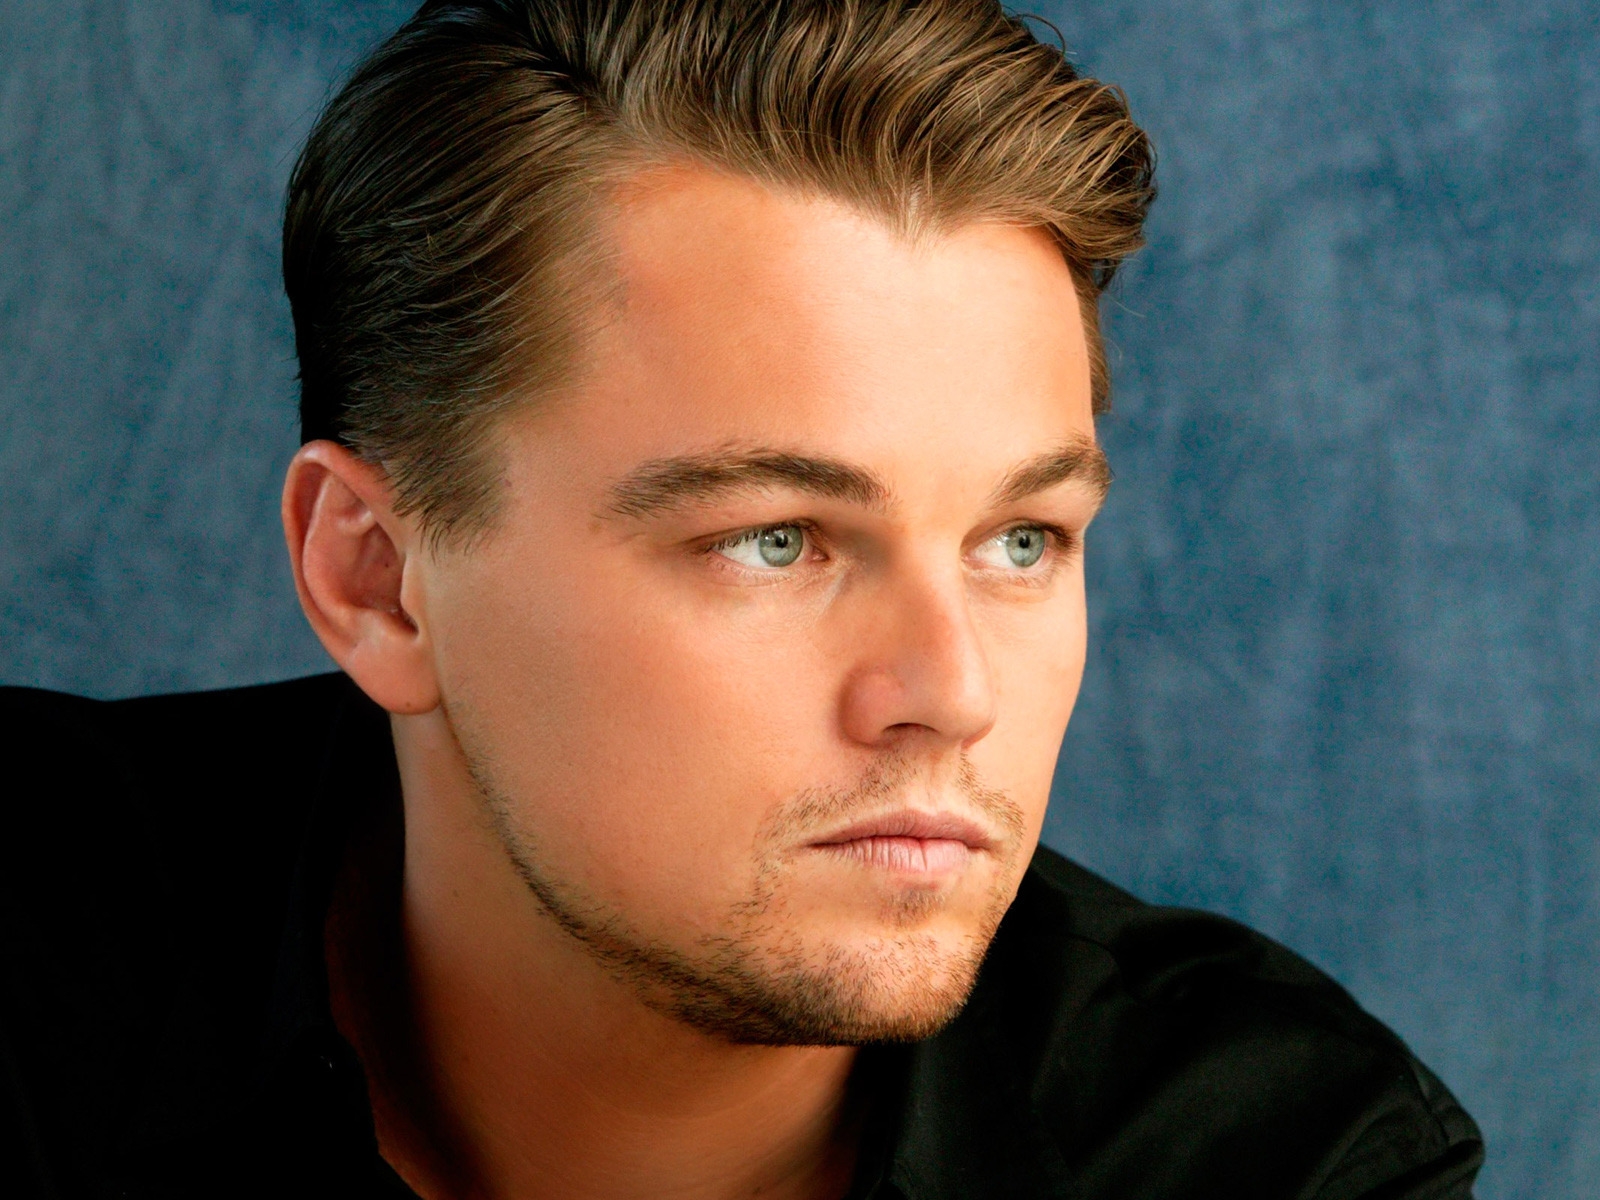 Beautiful Leonardo DiCaprio for 1600 x 1200 resolution